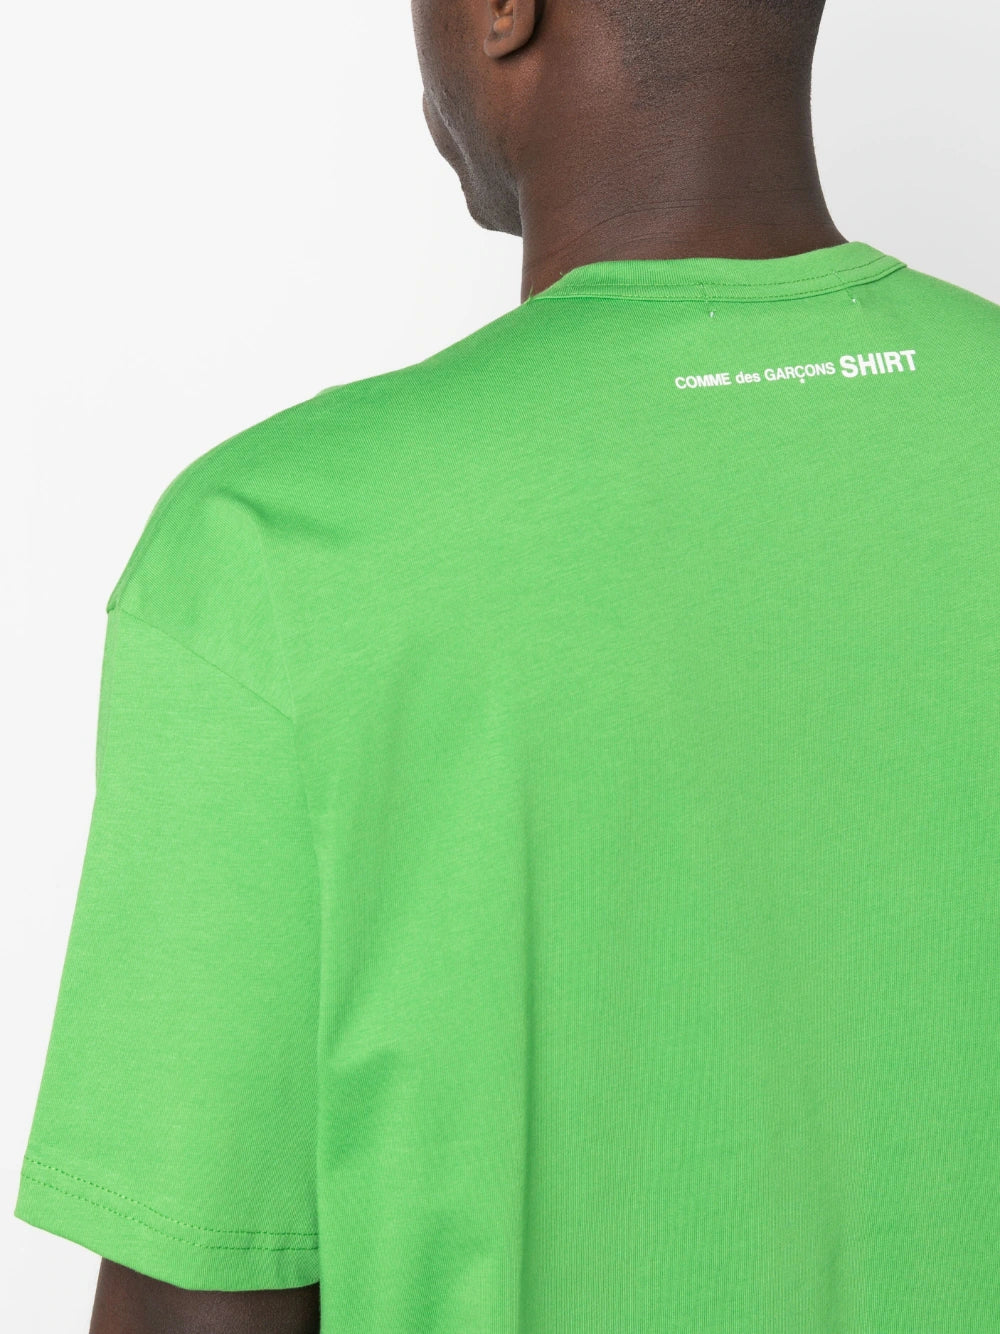 Comme Des Garcons Shirt Green T-Shirt